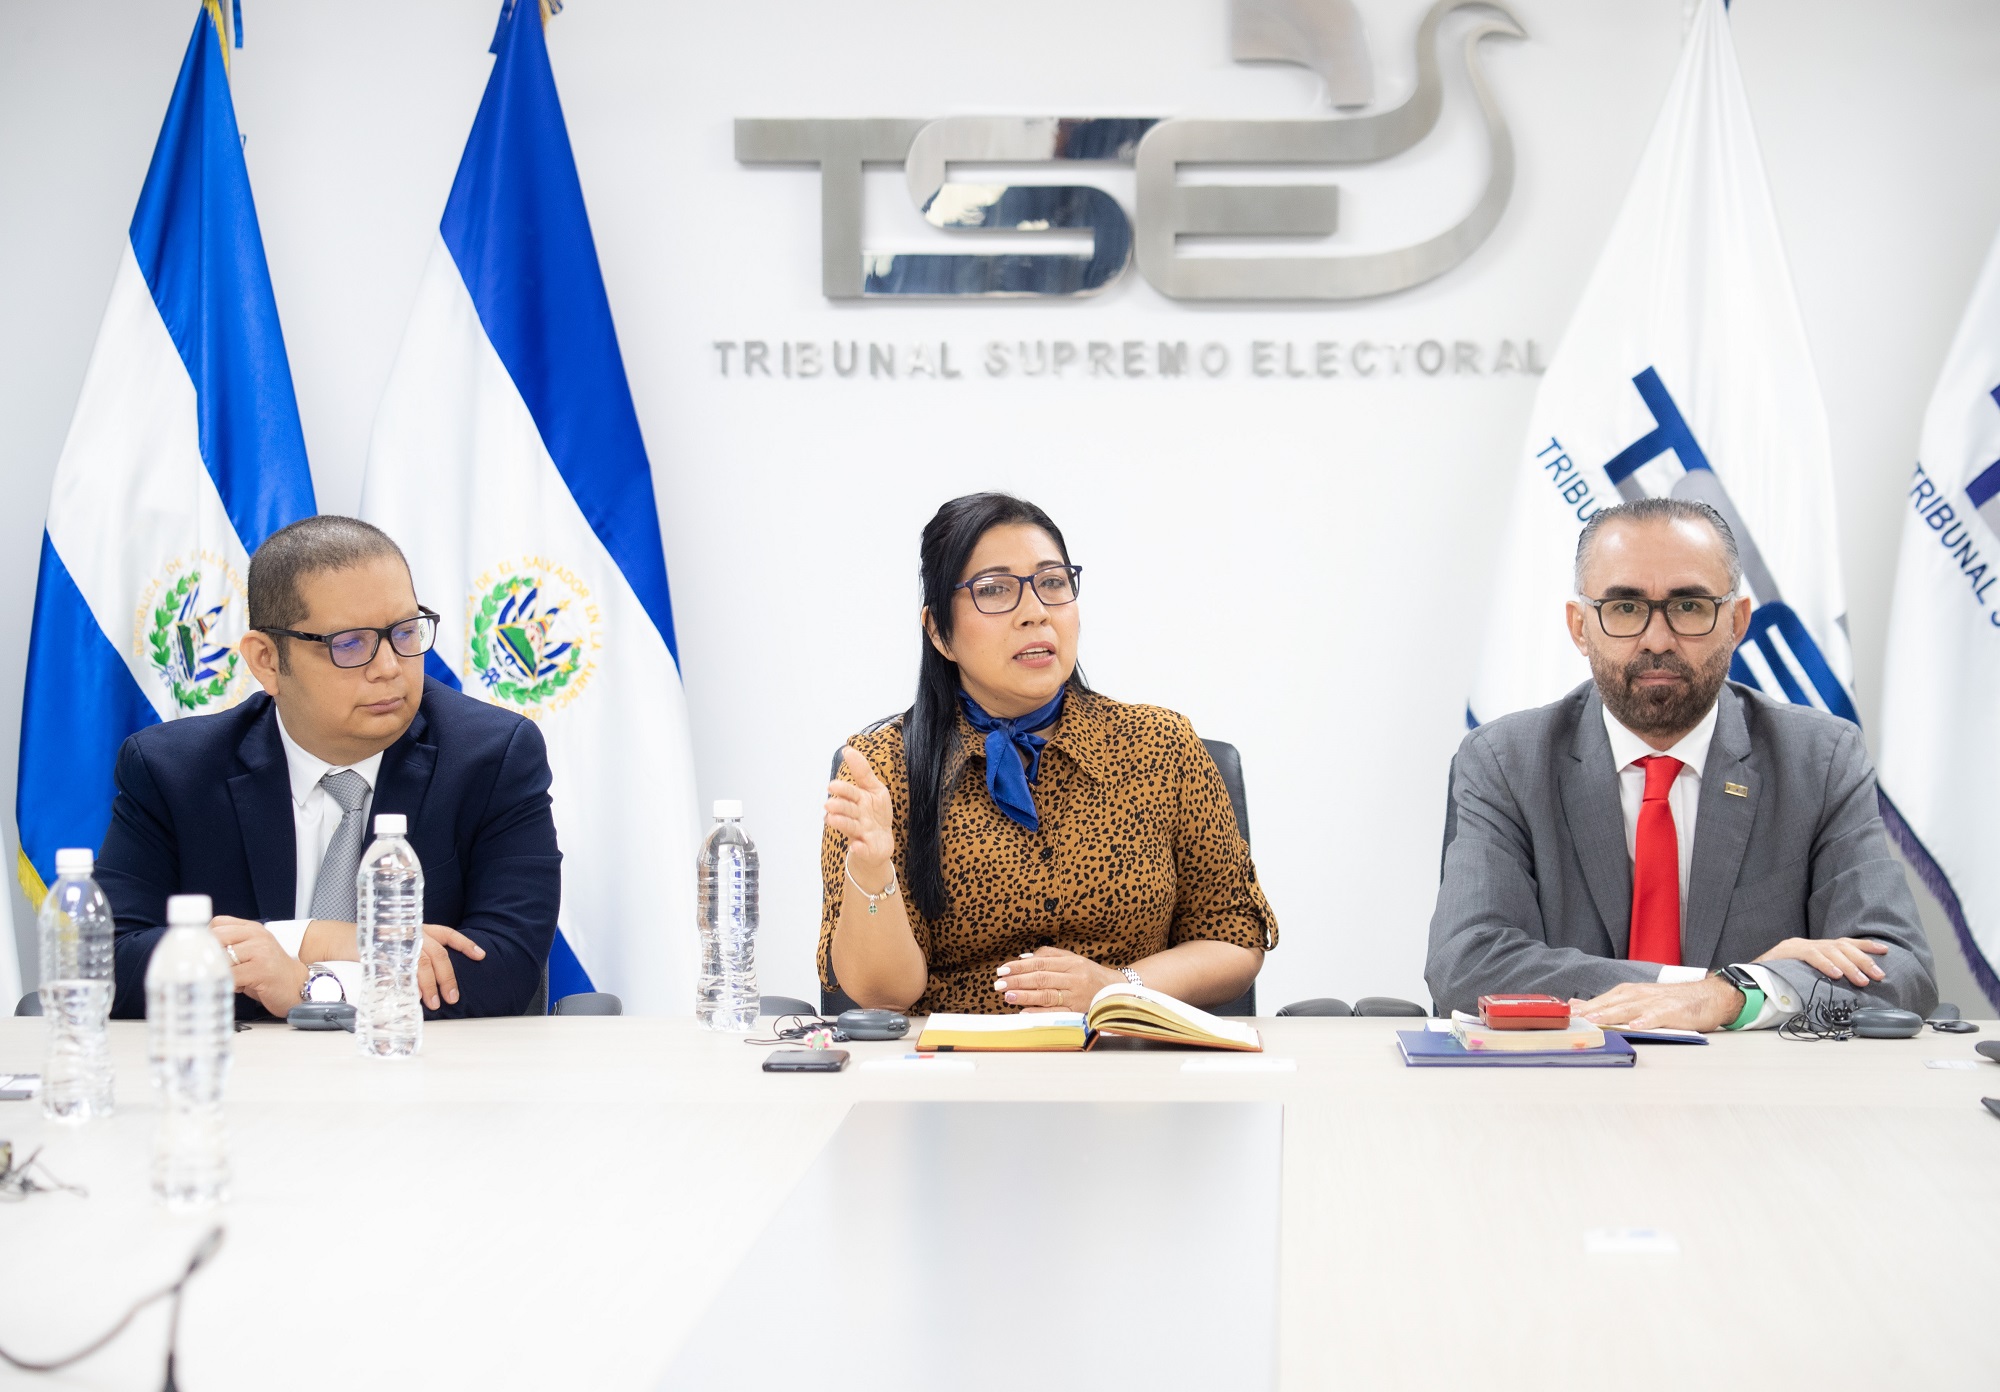 Magistrados del TSE durante una sesión de trabajo en el TSE: Rubén Meléndez (izquierda), Dora Martínez de Barahona y Noel Orellana. Los tres emitieron su voto a favor de varias resoluciones que permitieron inscribir a Fuerza Solidaria. Foto: cortesía.